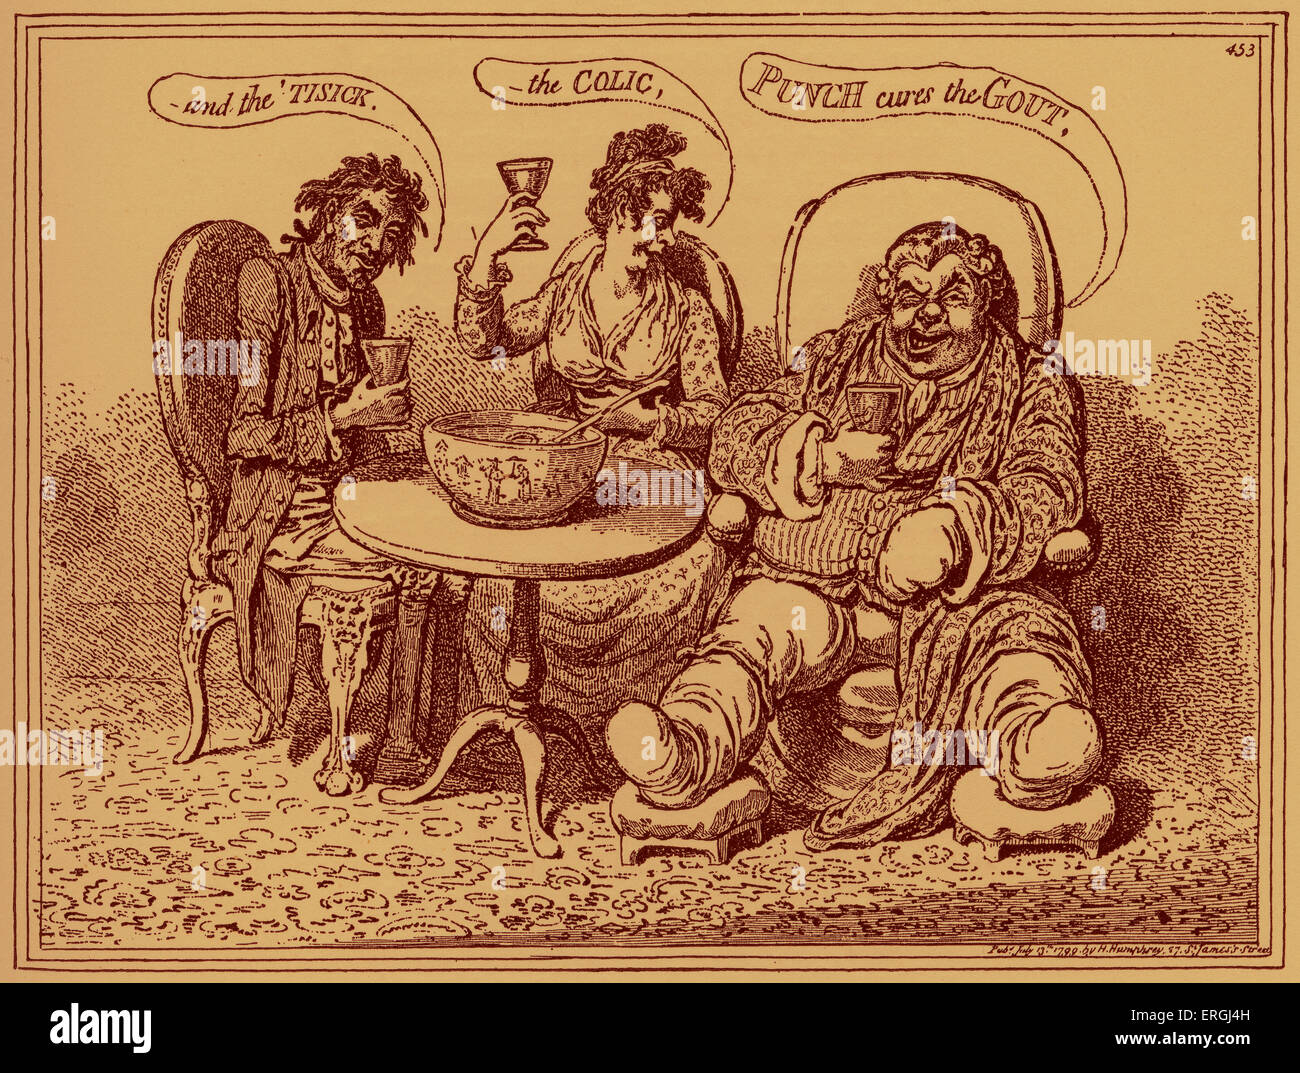 "Die Zahn der starkes Getränk - Karikatur von James Gillray. Bildunterschrift lautet: "Punch heilt die Gicht... und die"Tisick, -die Koliken". Stockfoto